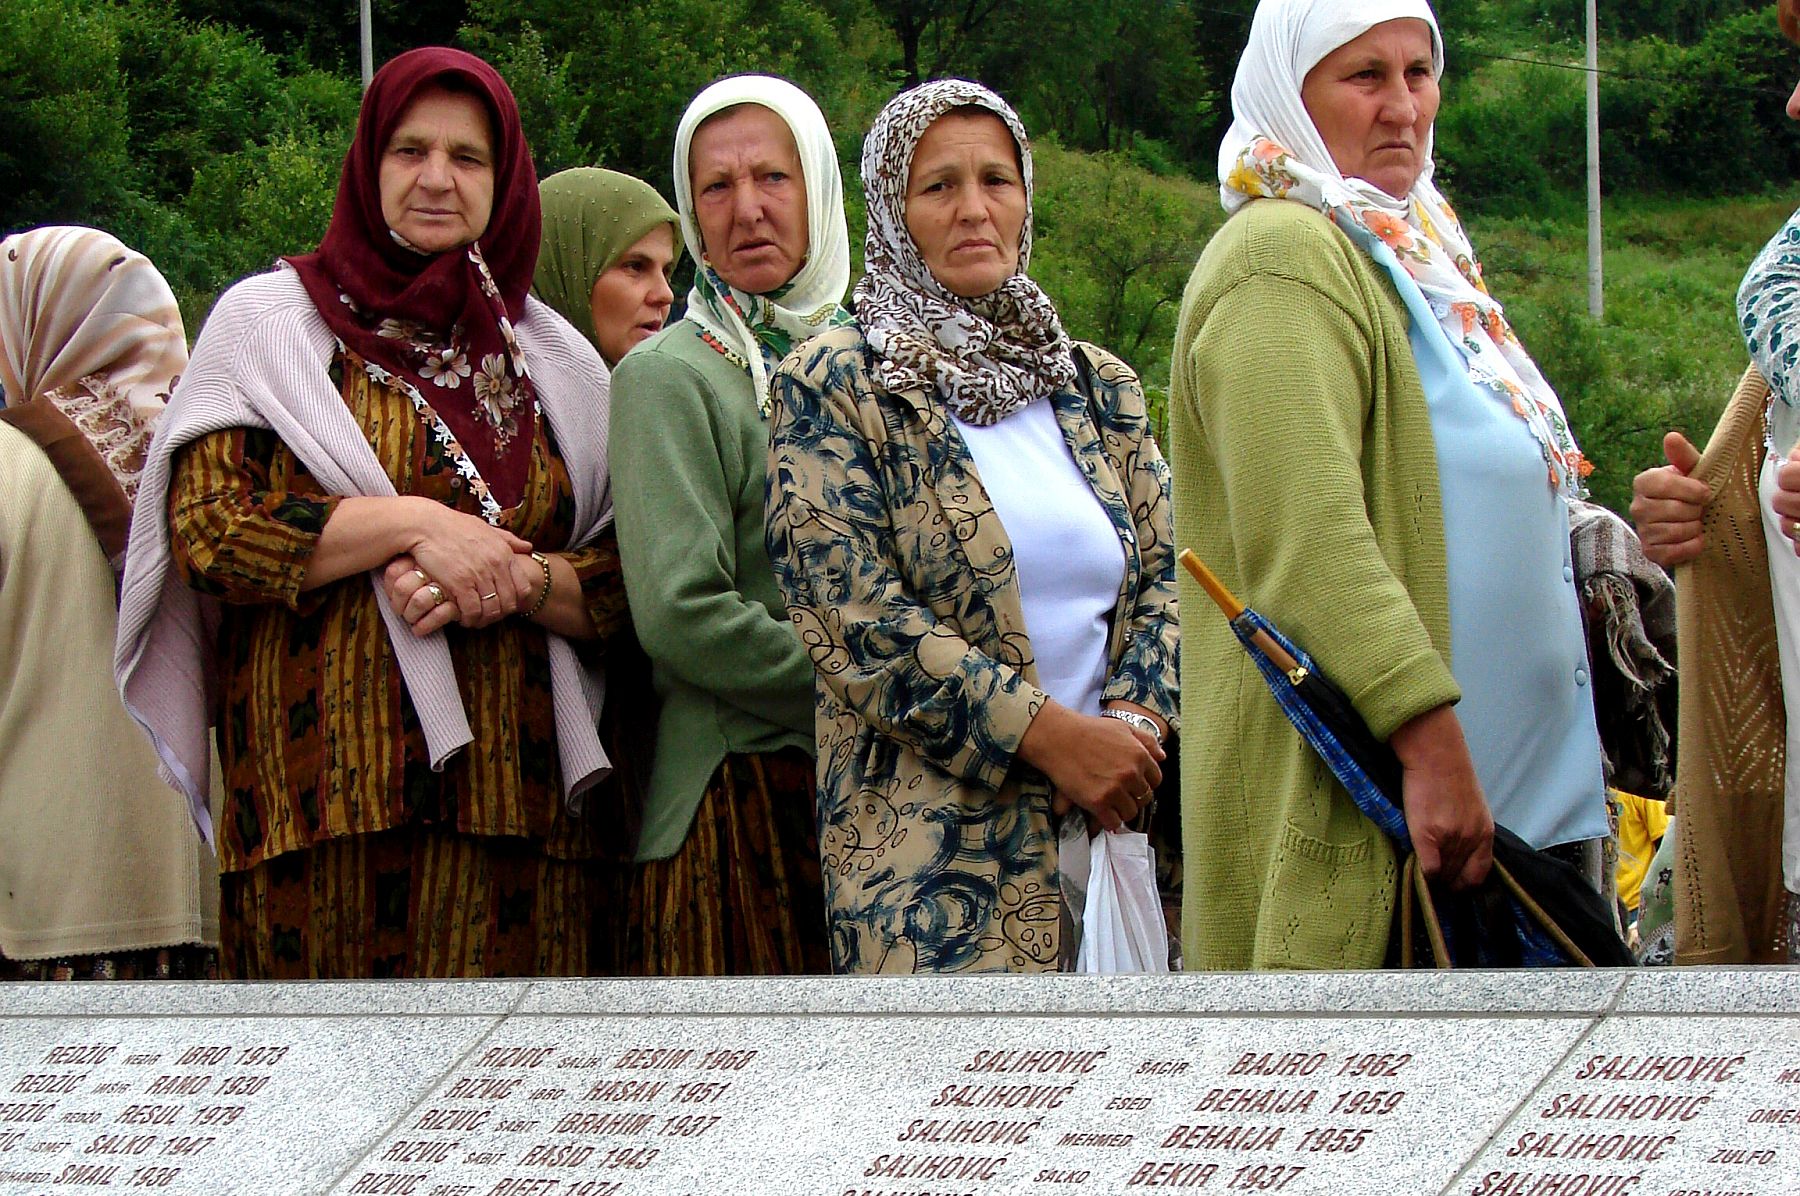 הסרבים בבוסניה הרגישו מאוימים. נשים בוסניות באתר להנצחת הטבח בסרברניצה (צילום: אדם ג'ונס CC BY SA 3.0)